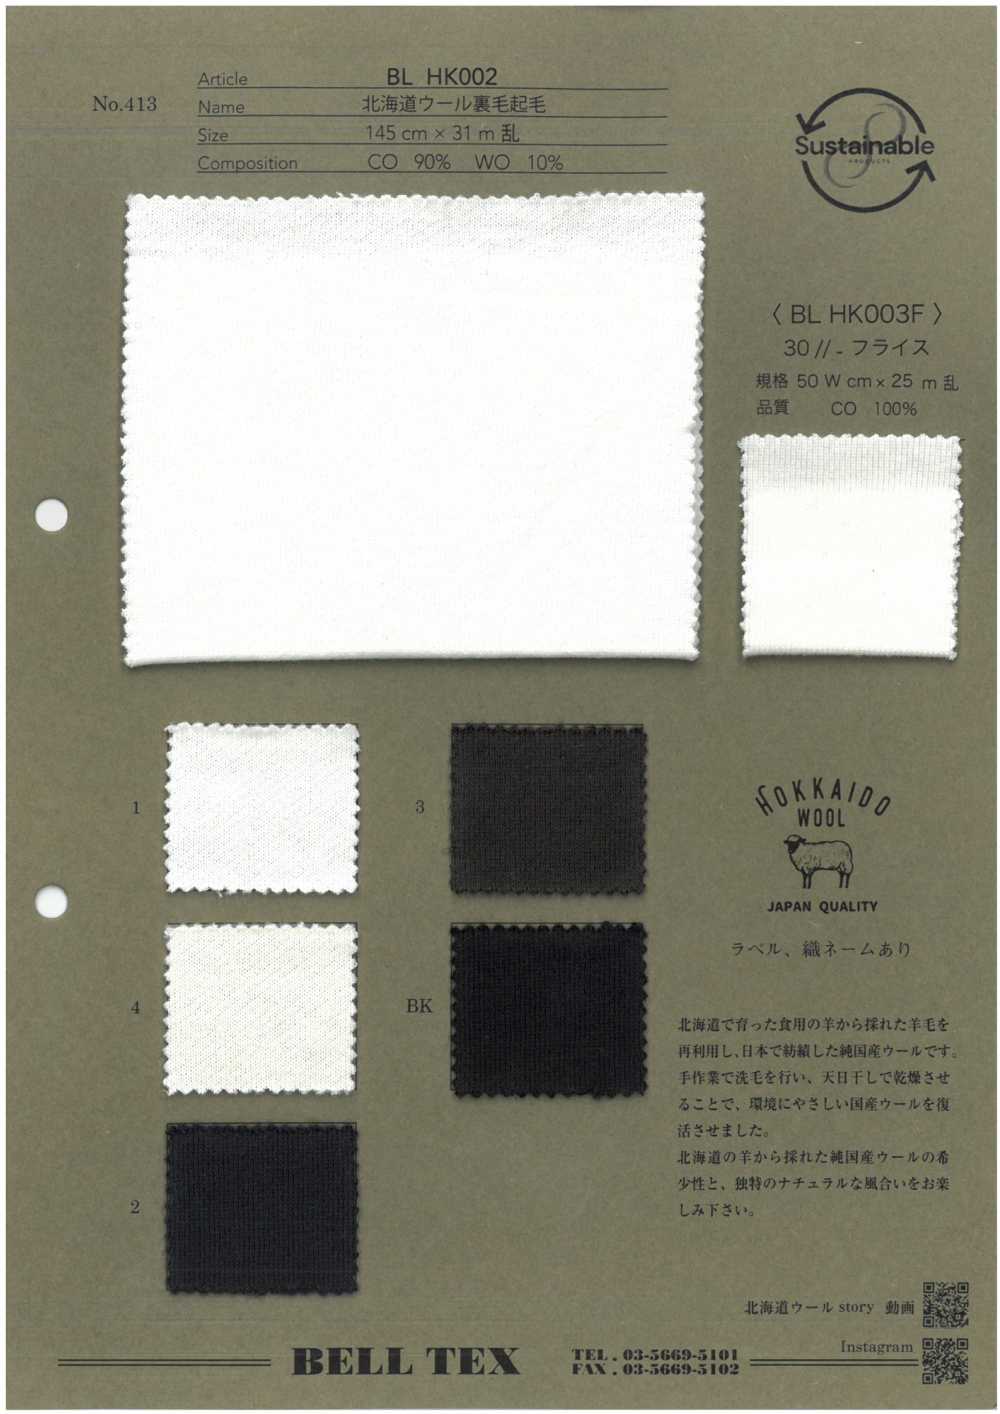 BLHK002 [Fabrica Textil] Vértice